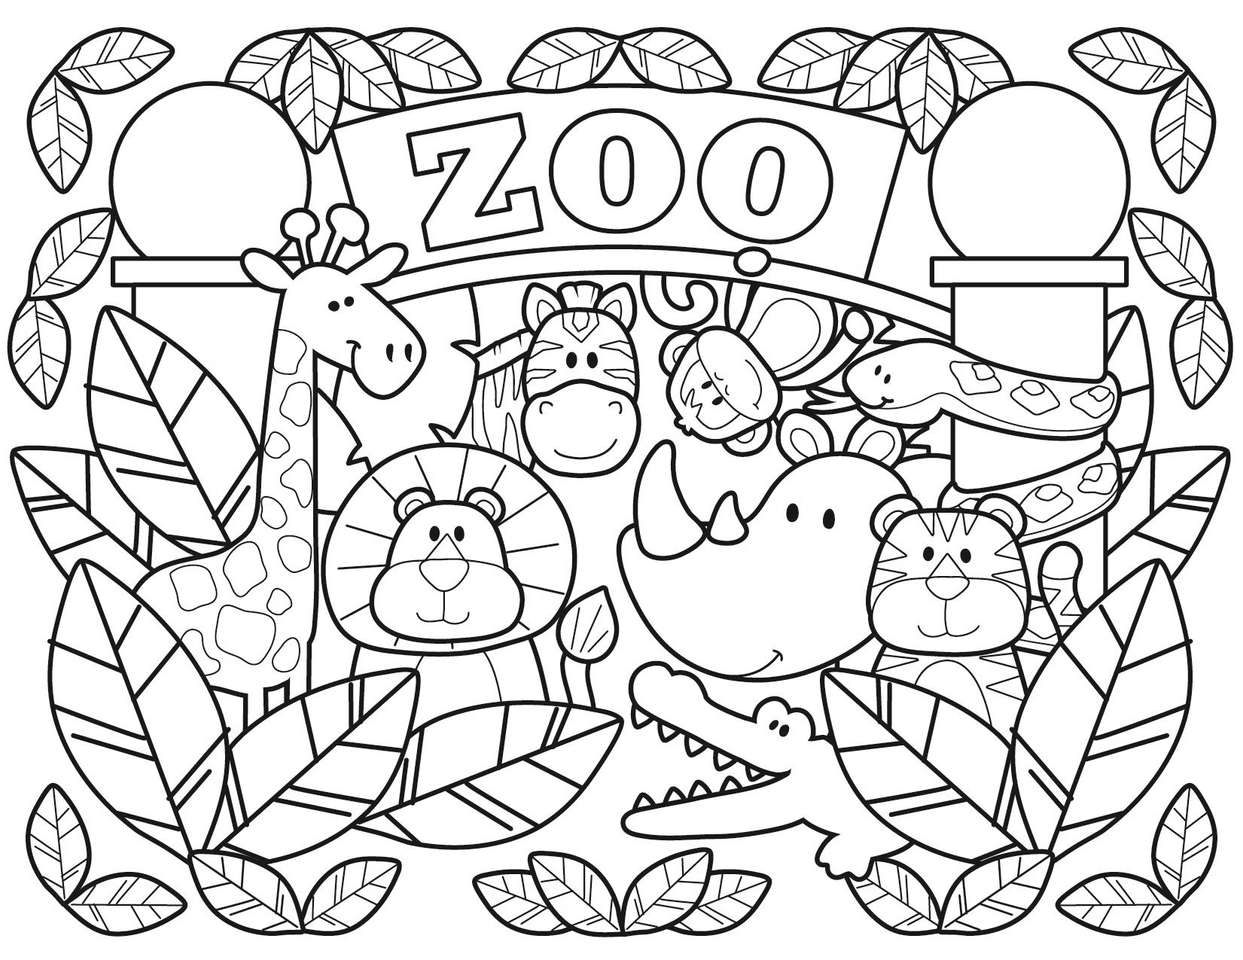 ZOO ANIMALS online puzzle